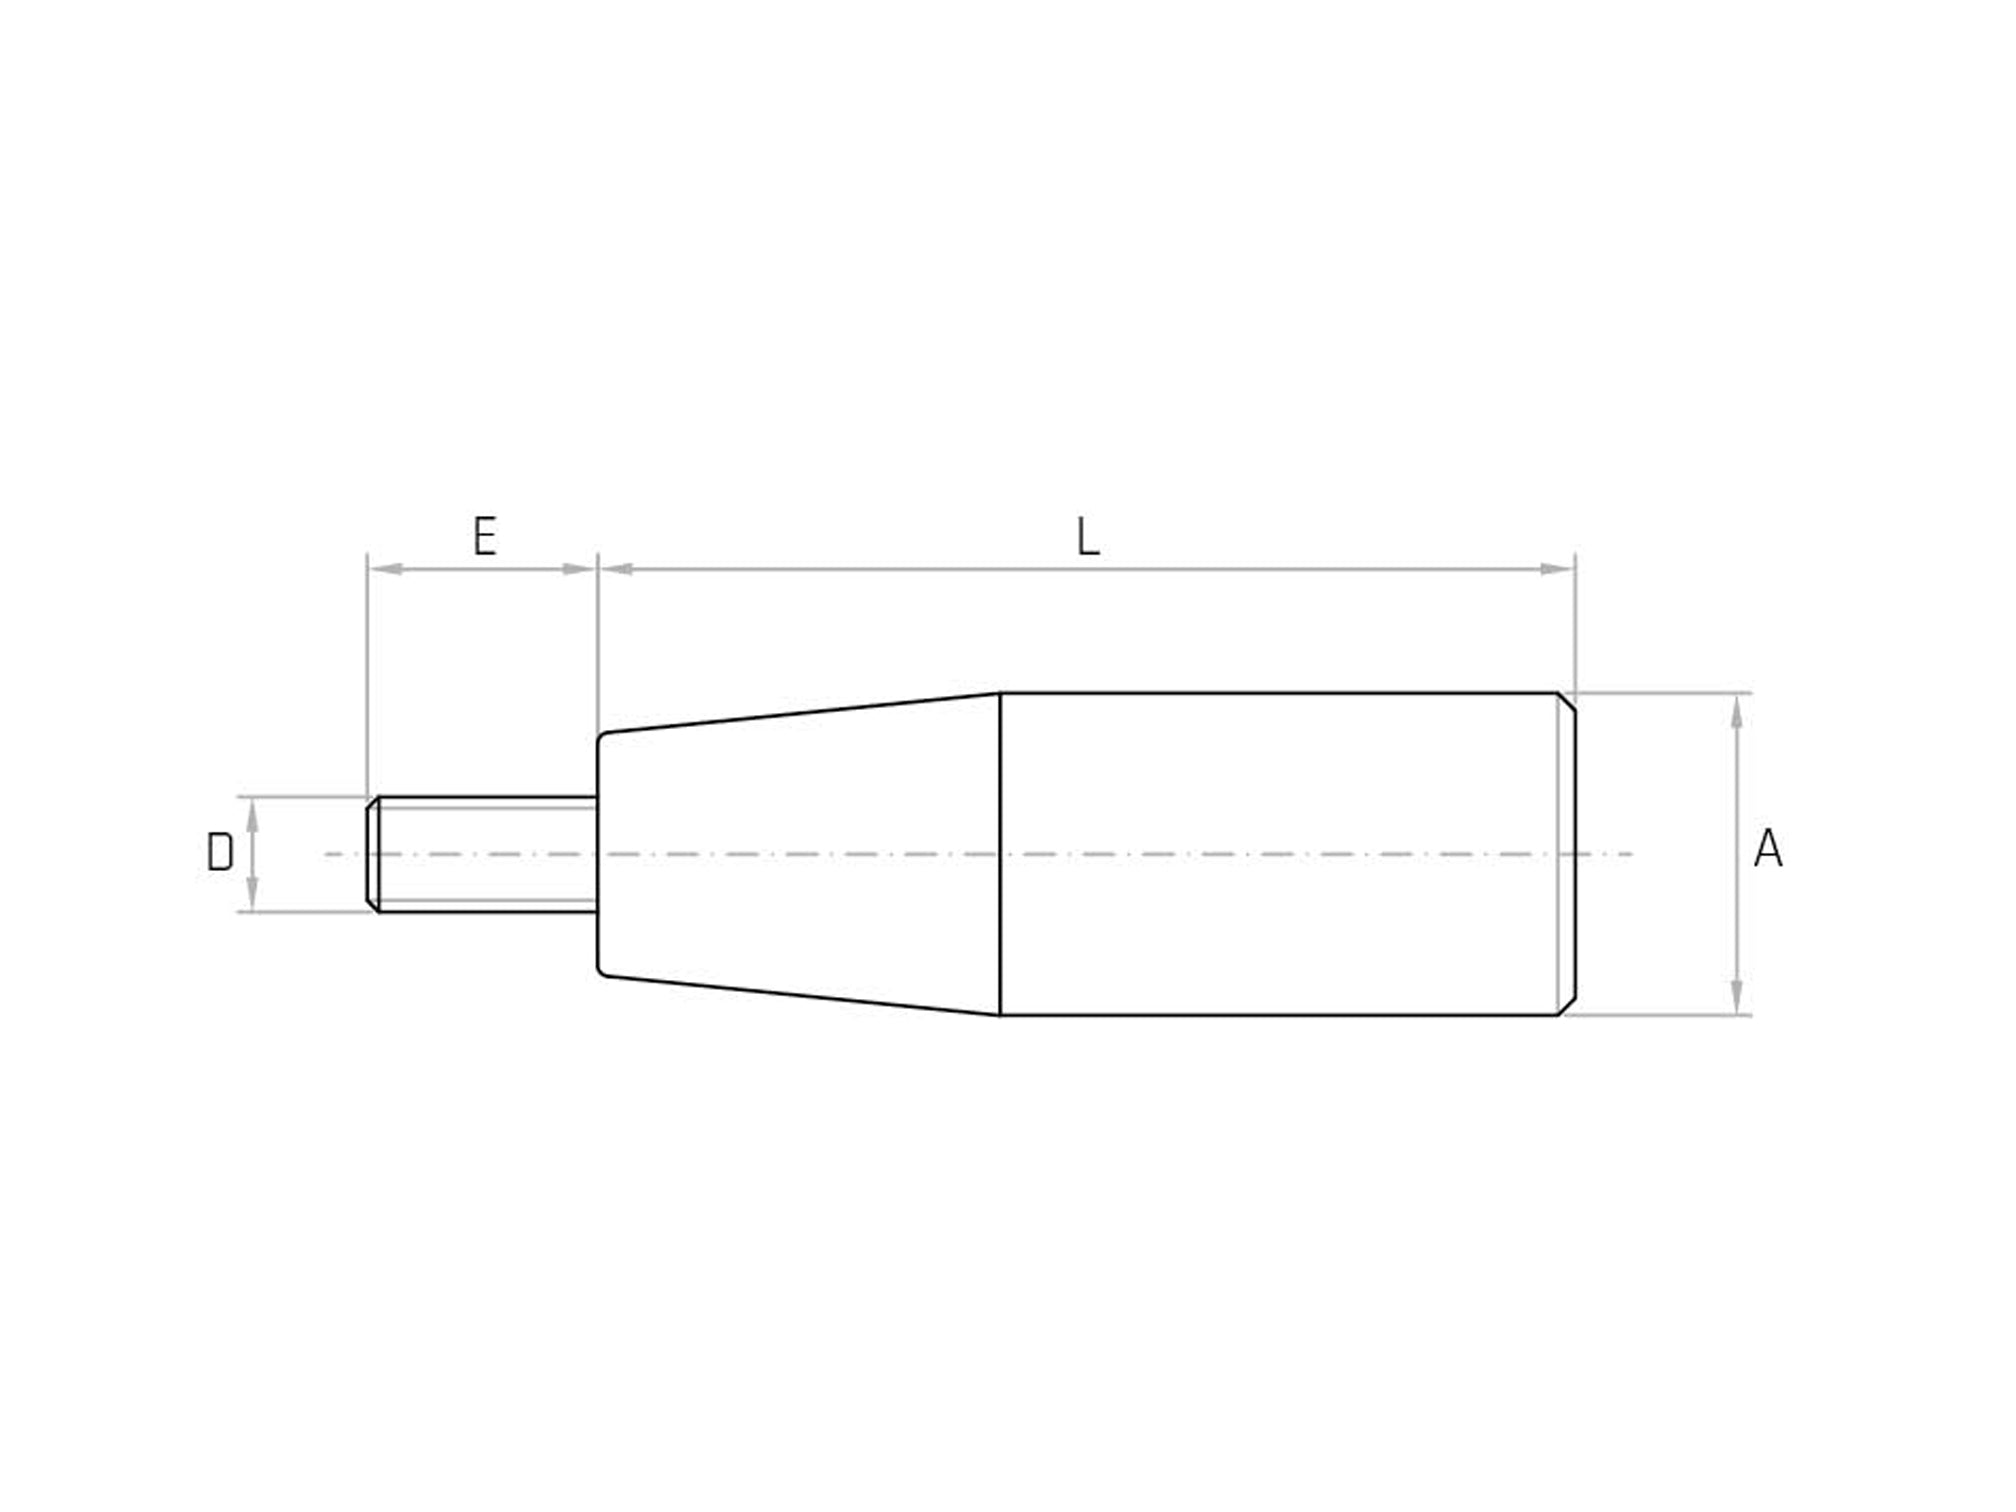 MCF - Manopola cilindrica con perno fisso - Gamm